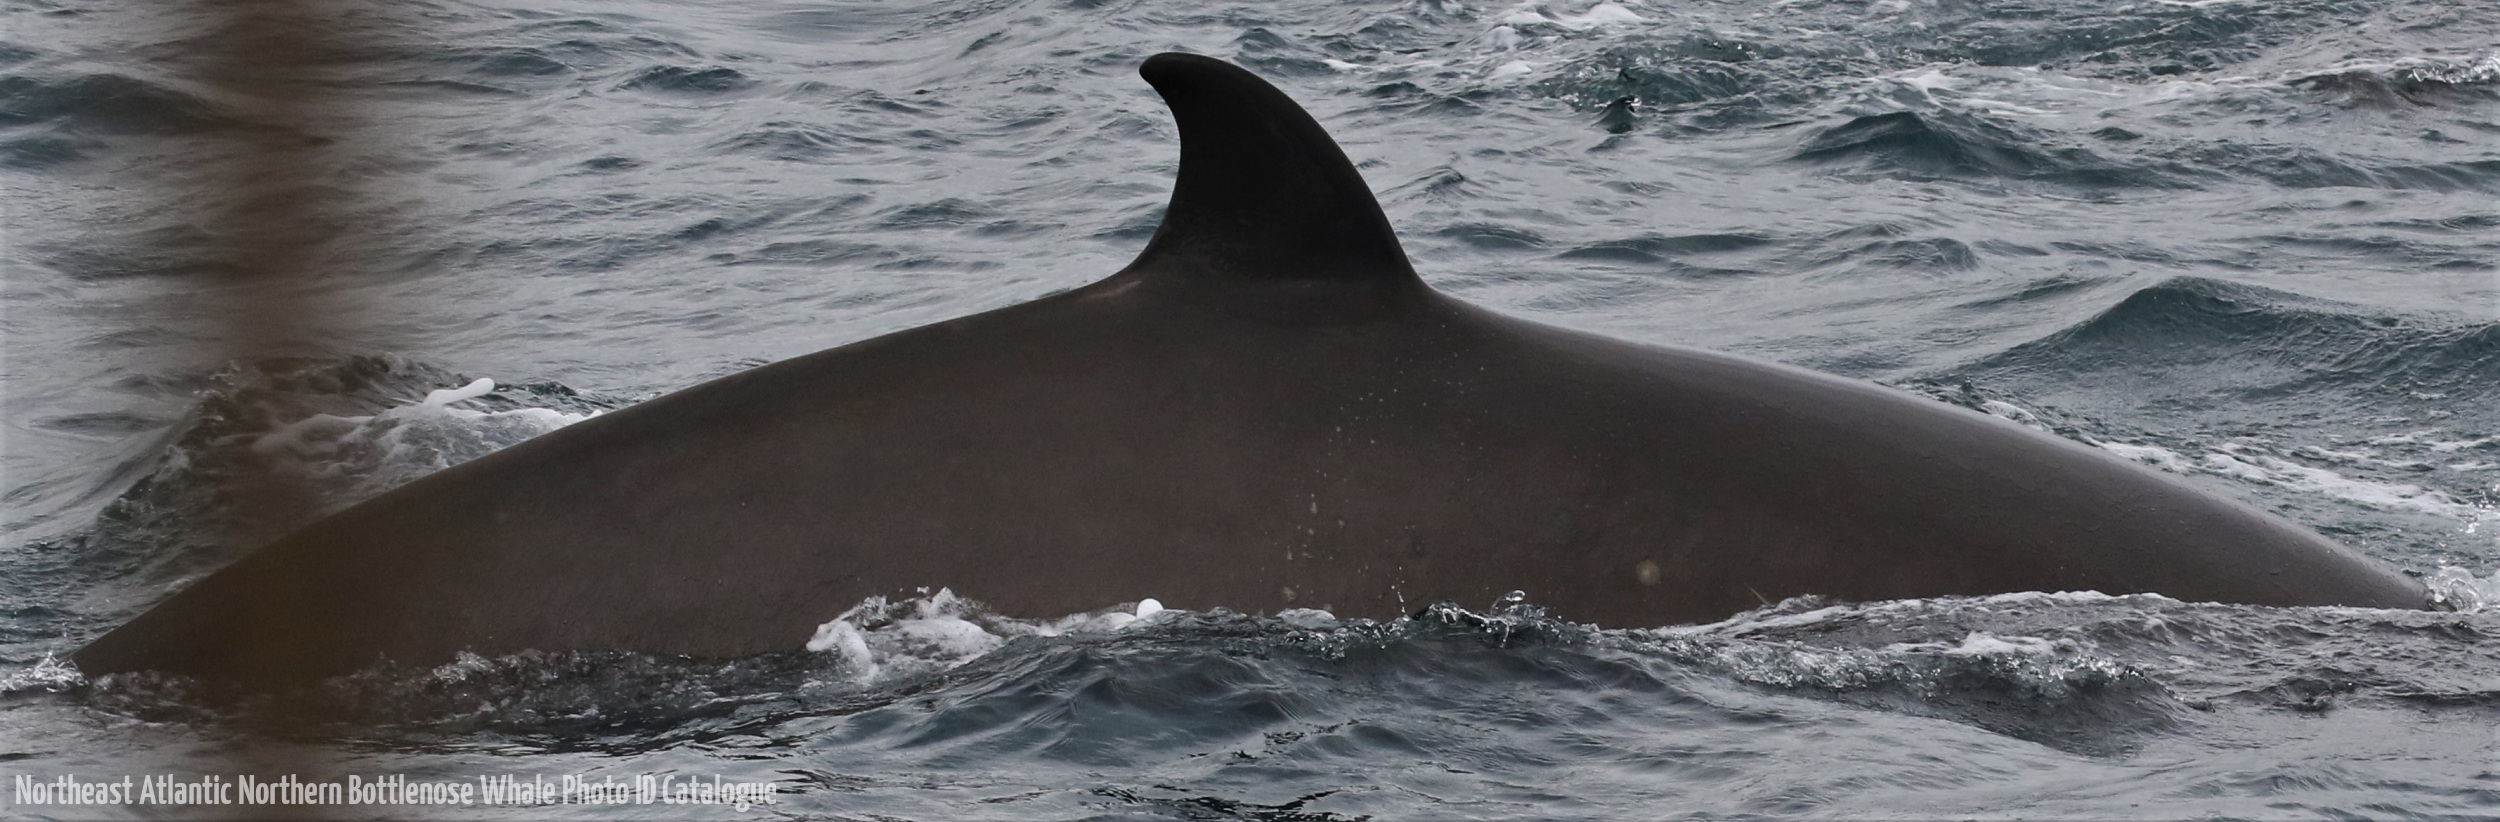 Whale ID: 0364,  Date taken: 16-06-2016,  Photographer: Eilidh Siegal